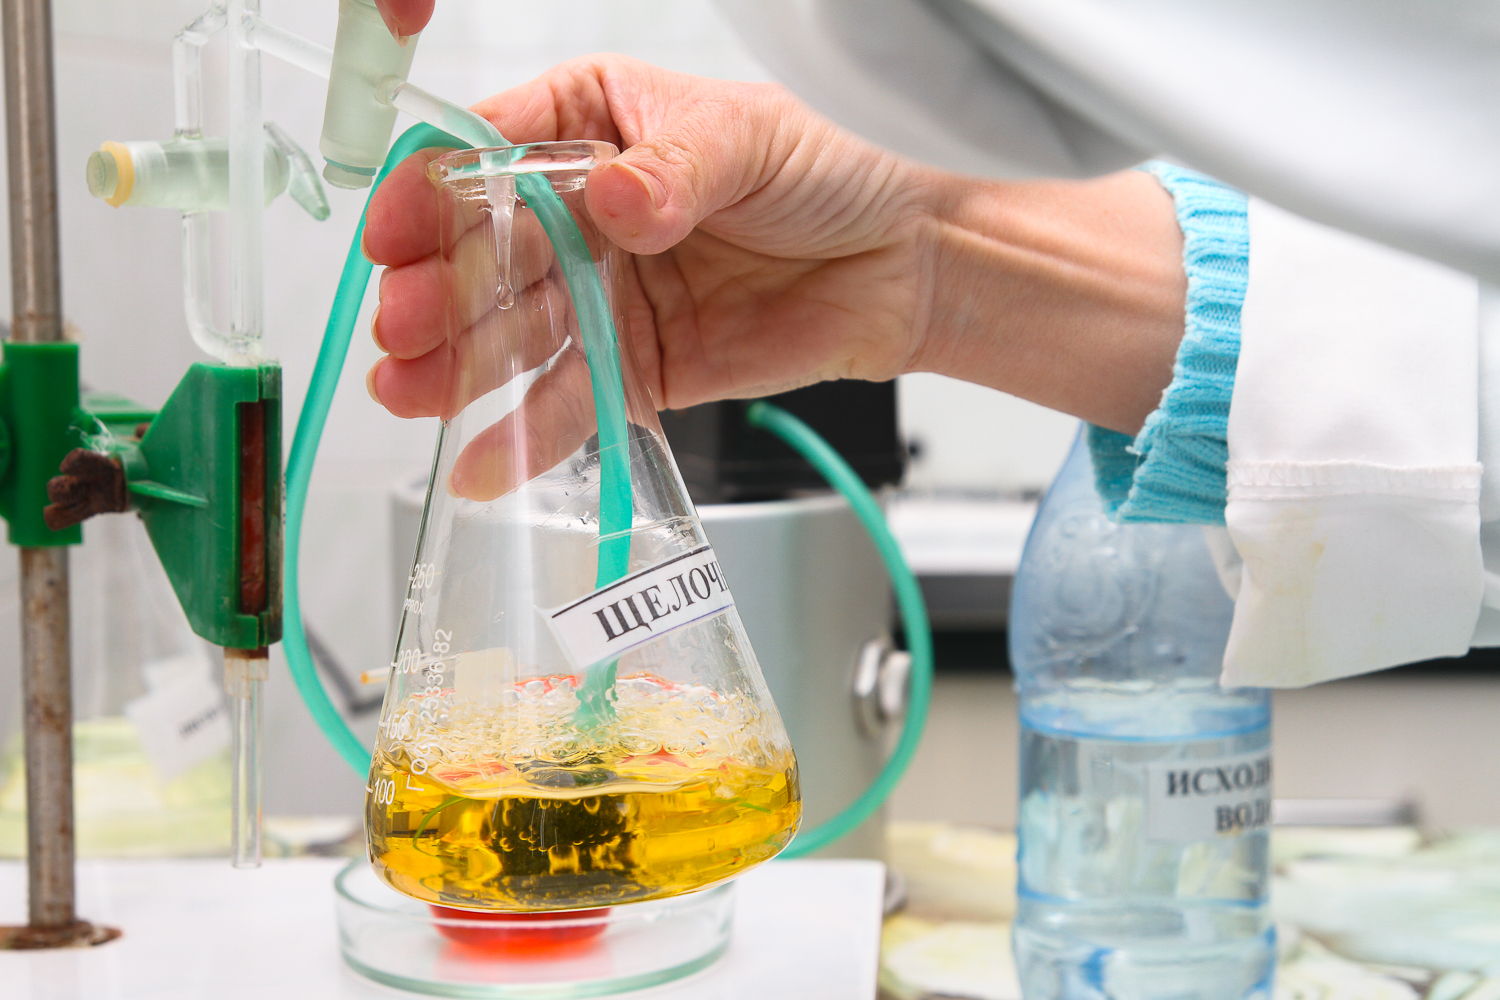 Основной функцией лаборатории вода является. Химическое исследование воды. Исследование воды в лаборатории. Физико-химические исследования воды. Исследование качества питьевой воды.